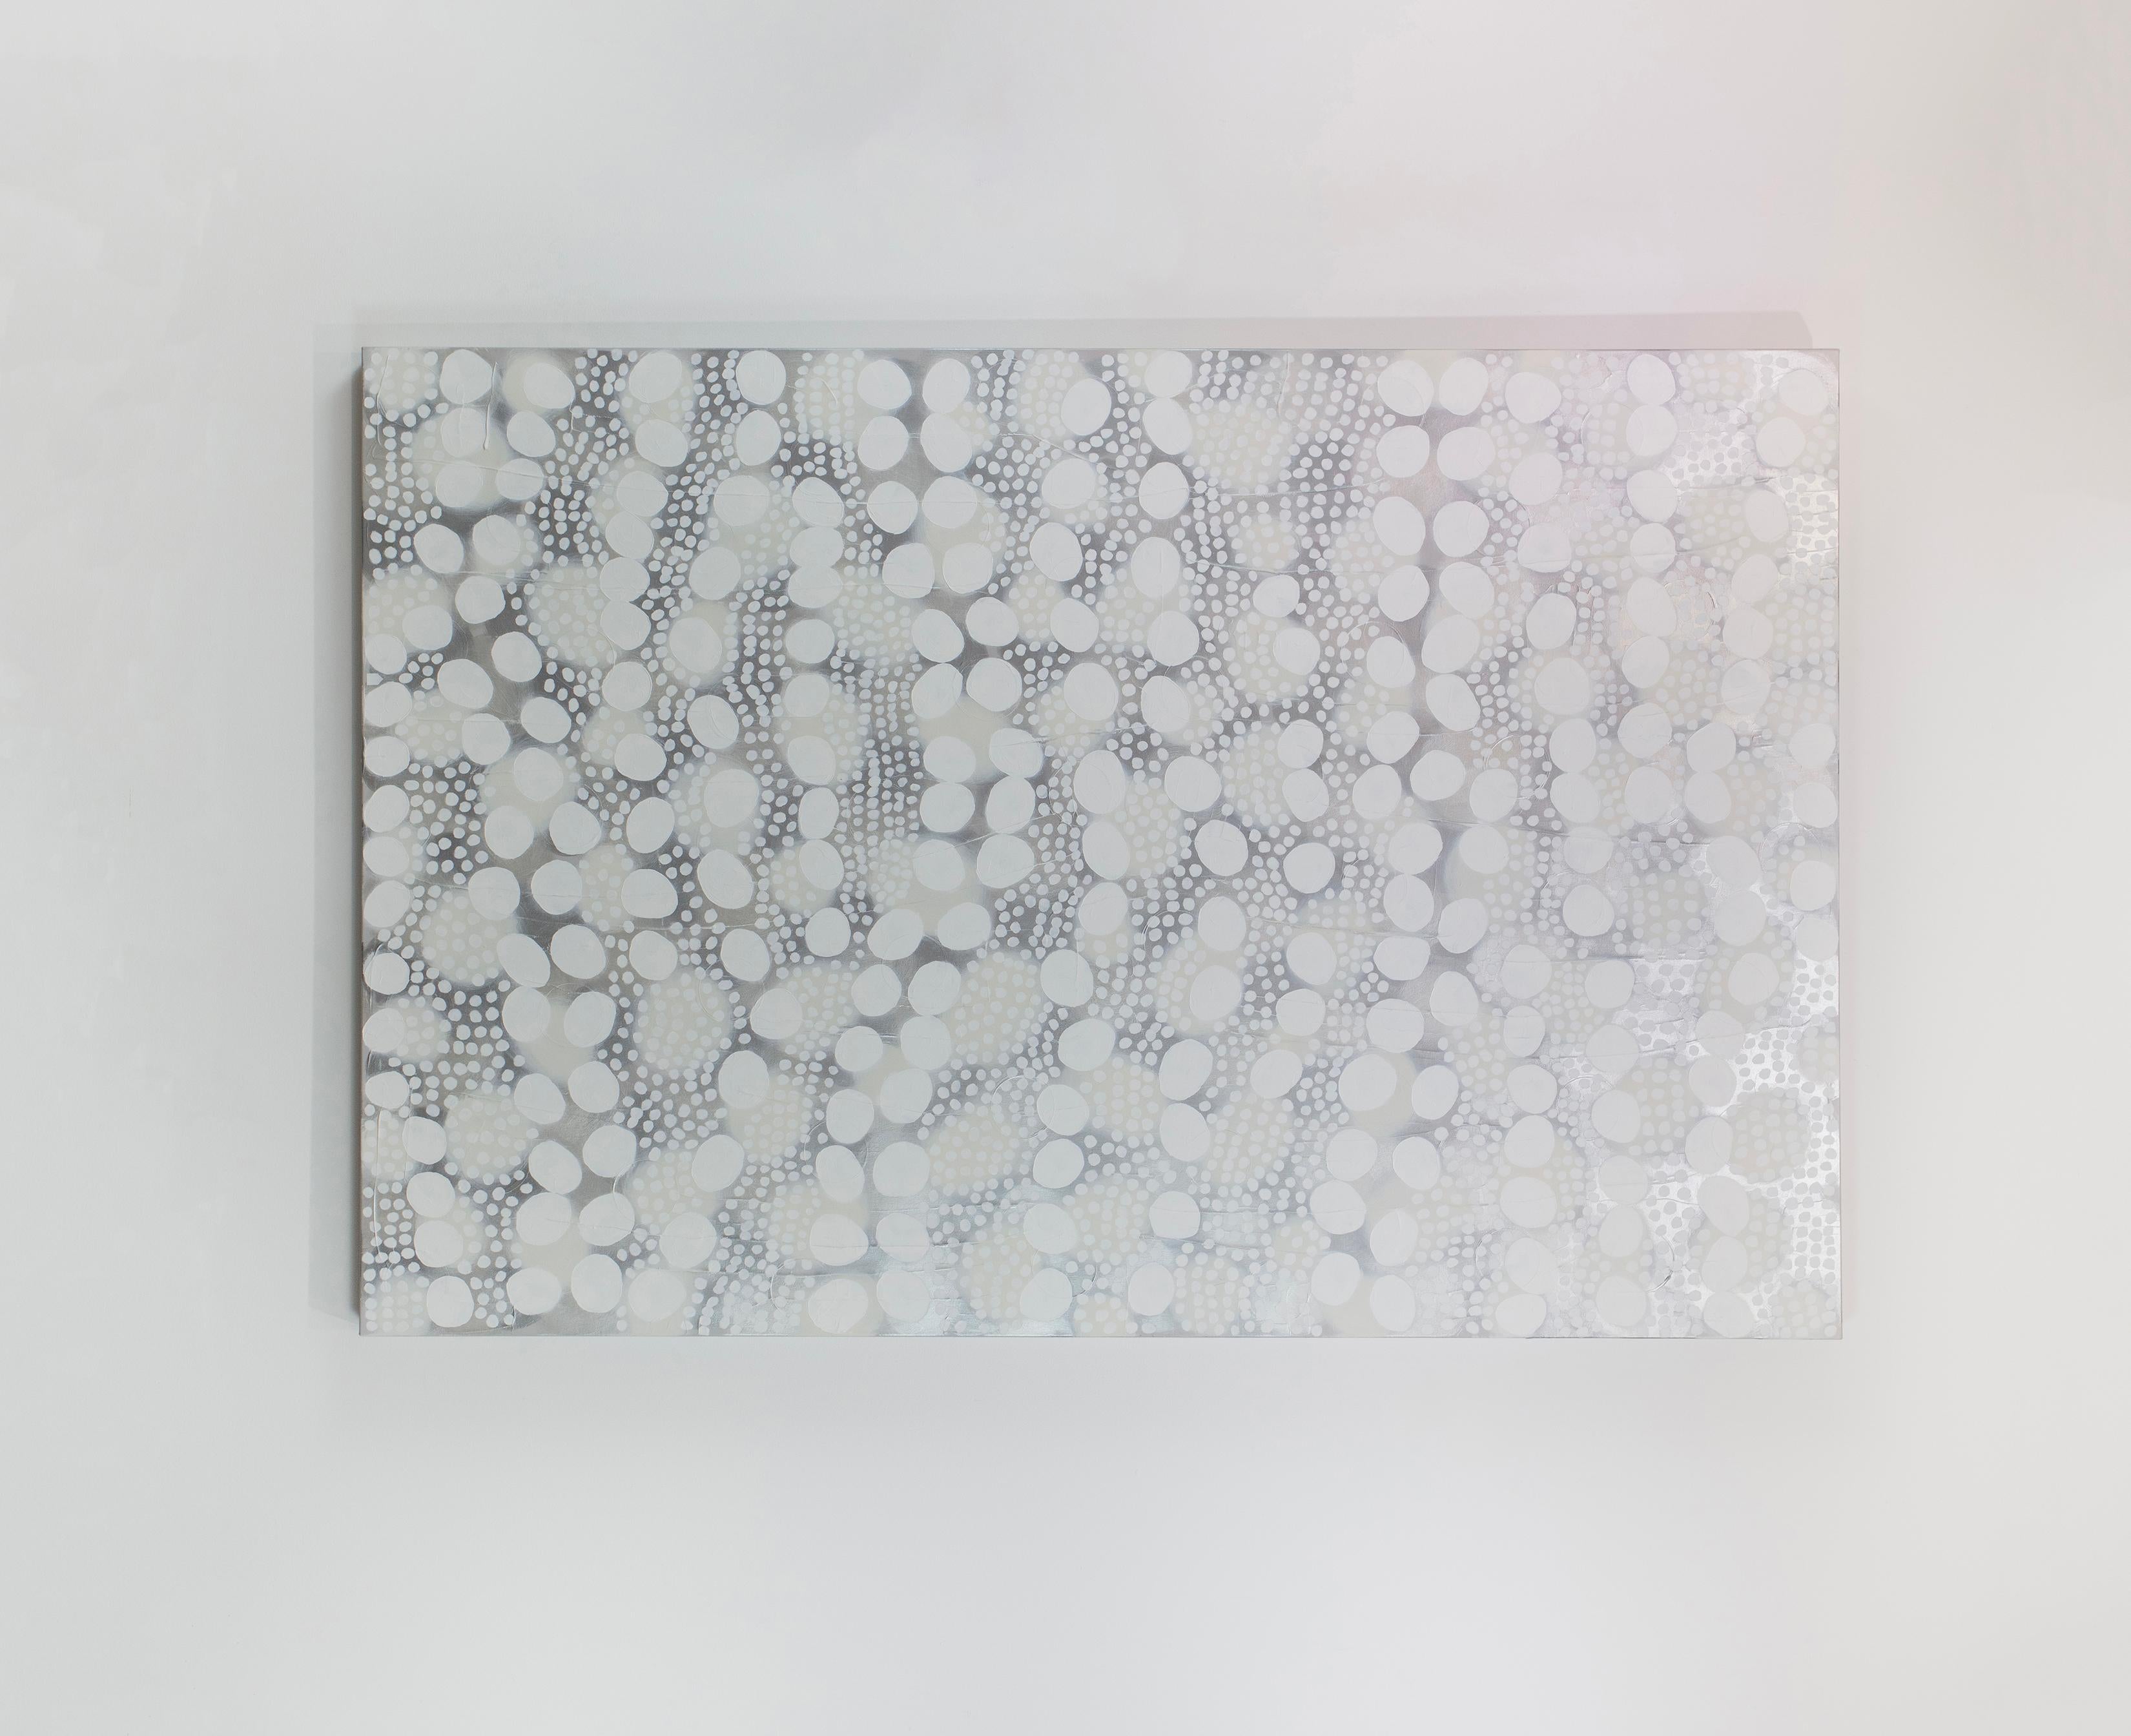 Ce grand tableau abstrait de Sofie Swann présente une palette de blanc et de gris clair, avec des formes circulaires blanches imparfaites de différentes tailles disposées avec de subtils accents métalliques argentés sur toute la toile. Cette